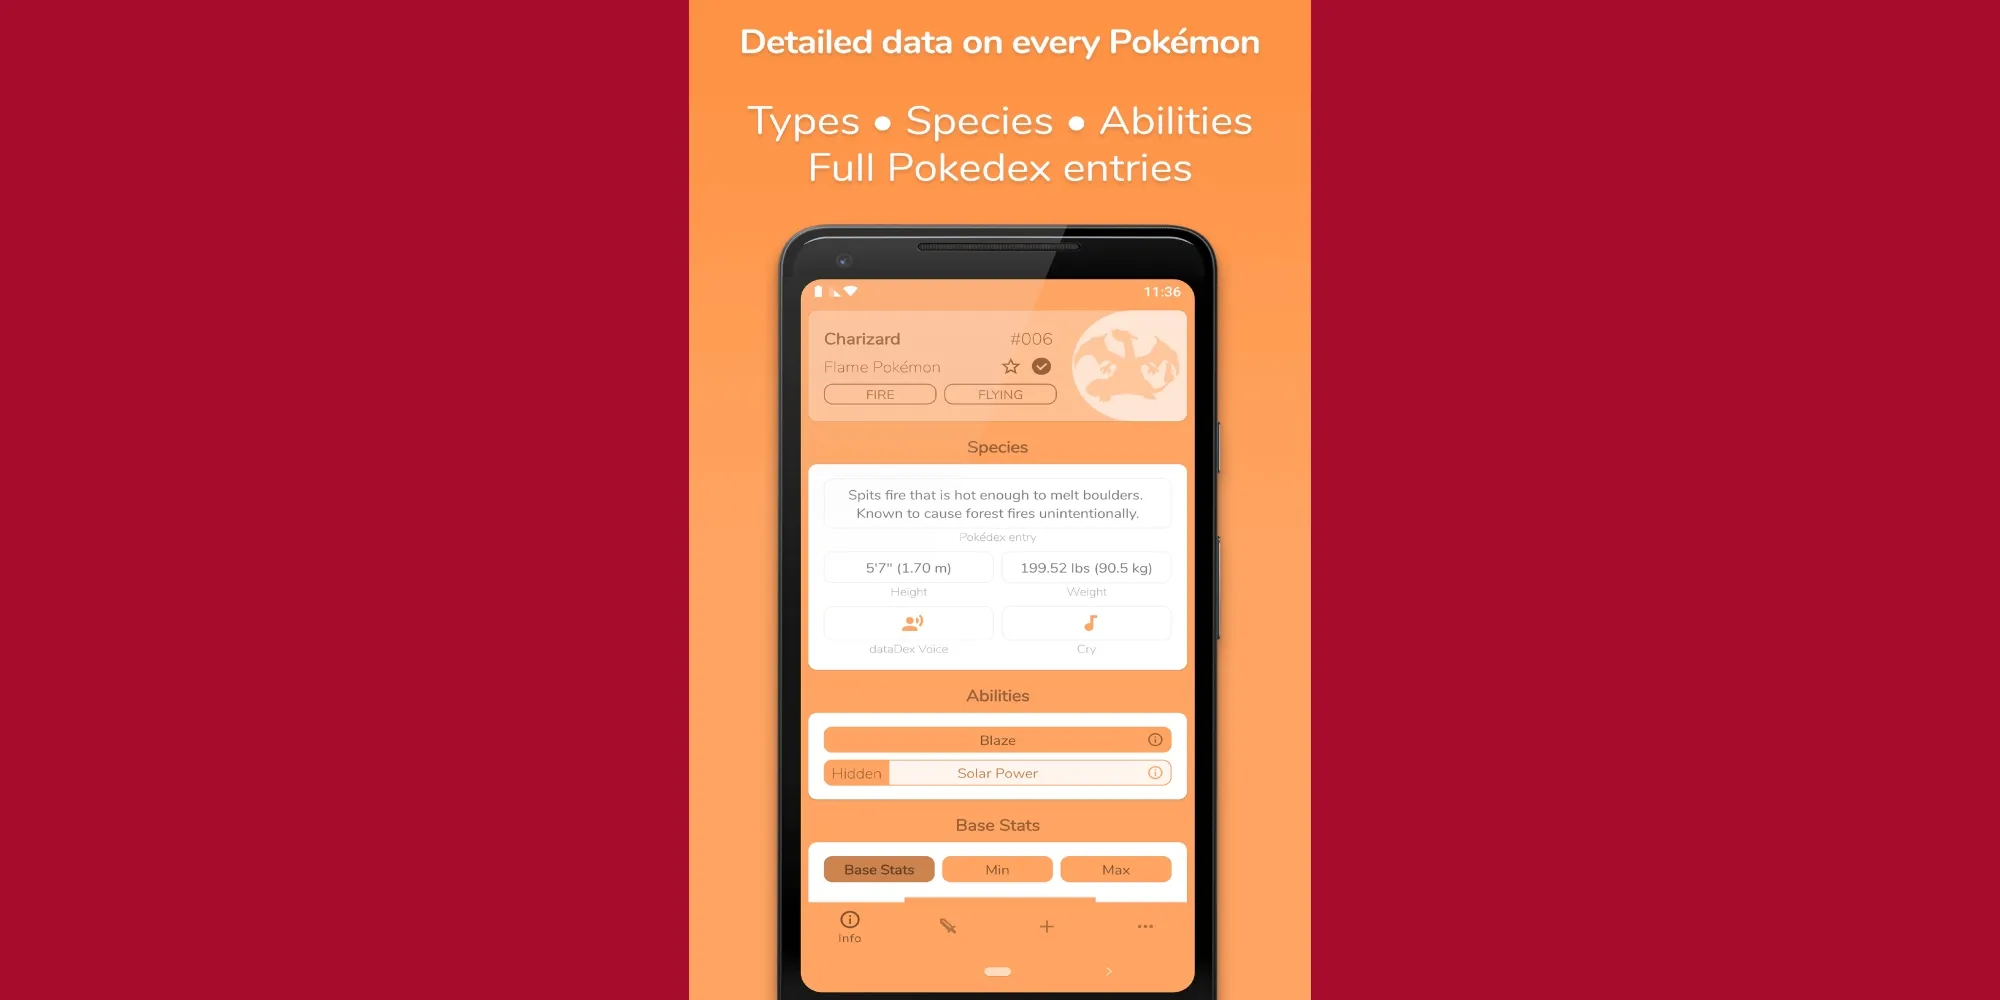 Giocatore che ricerca informazioni sui Pokemon tramite DataDex